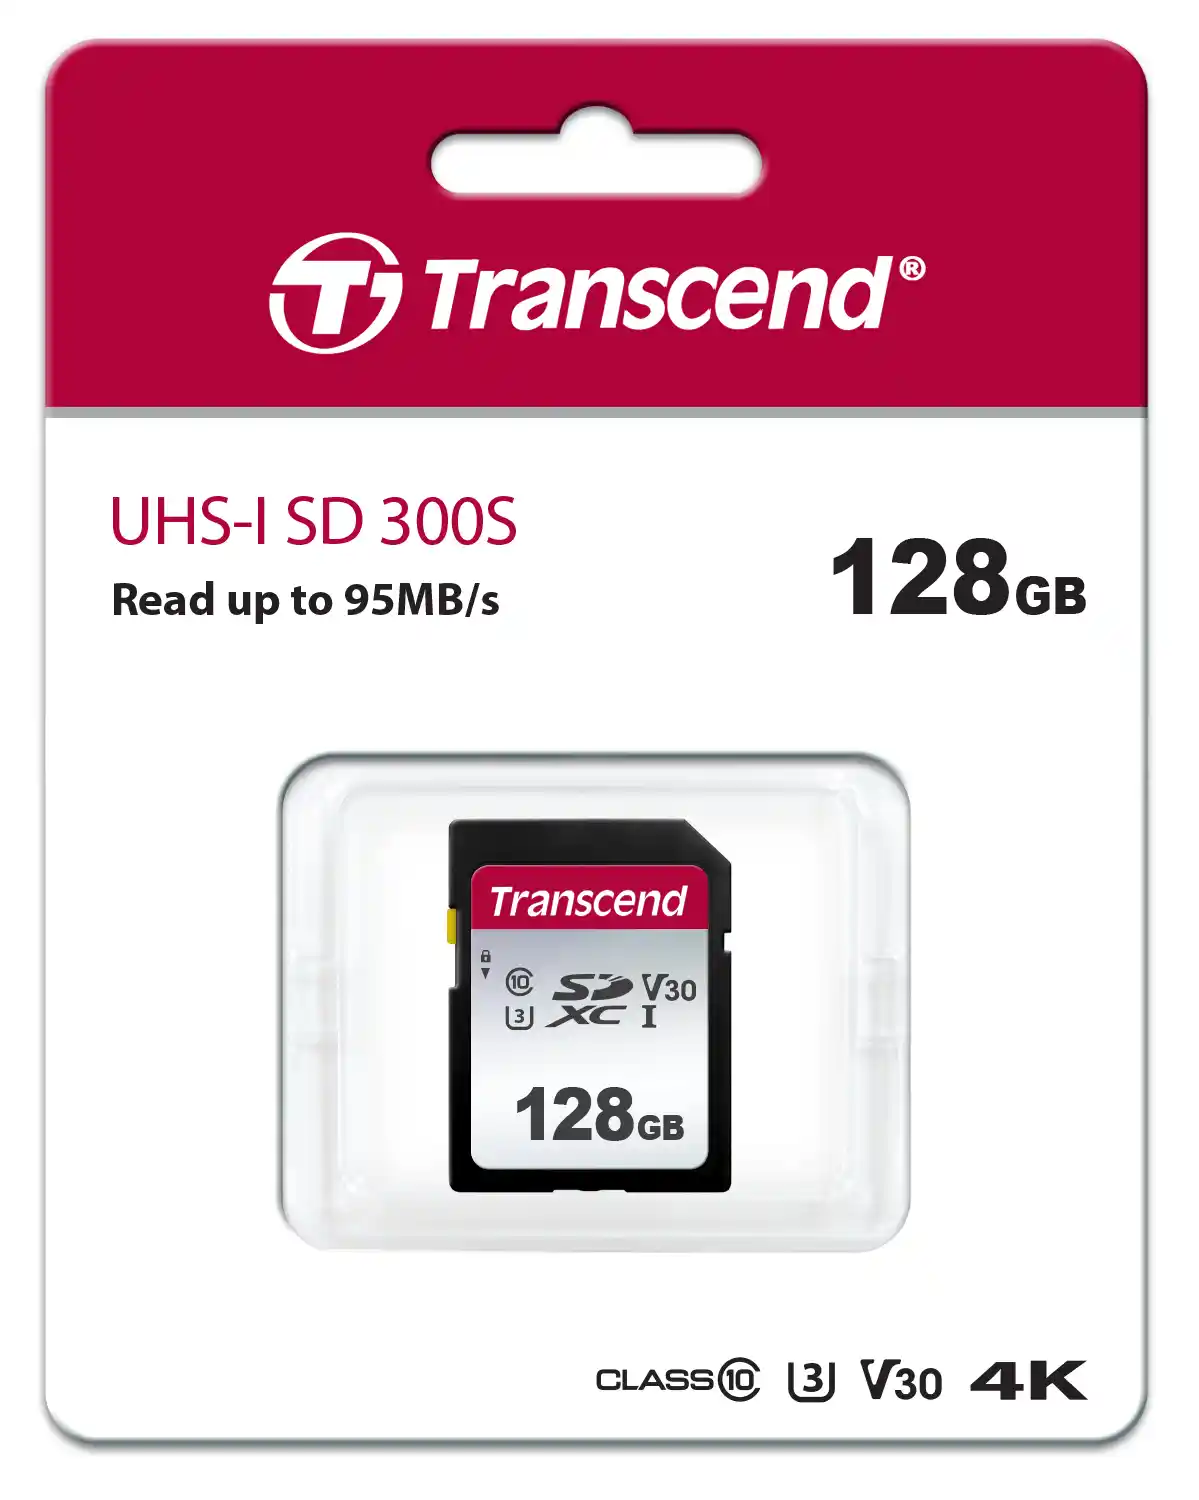 Карта памяти TRANSCEND 300S SDXC 128GB Class 10 UHS-I U1 V10 TS128GSDC300S